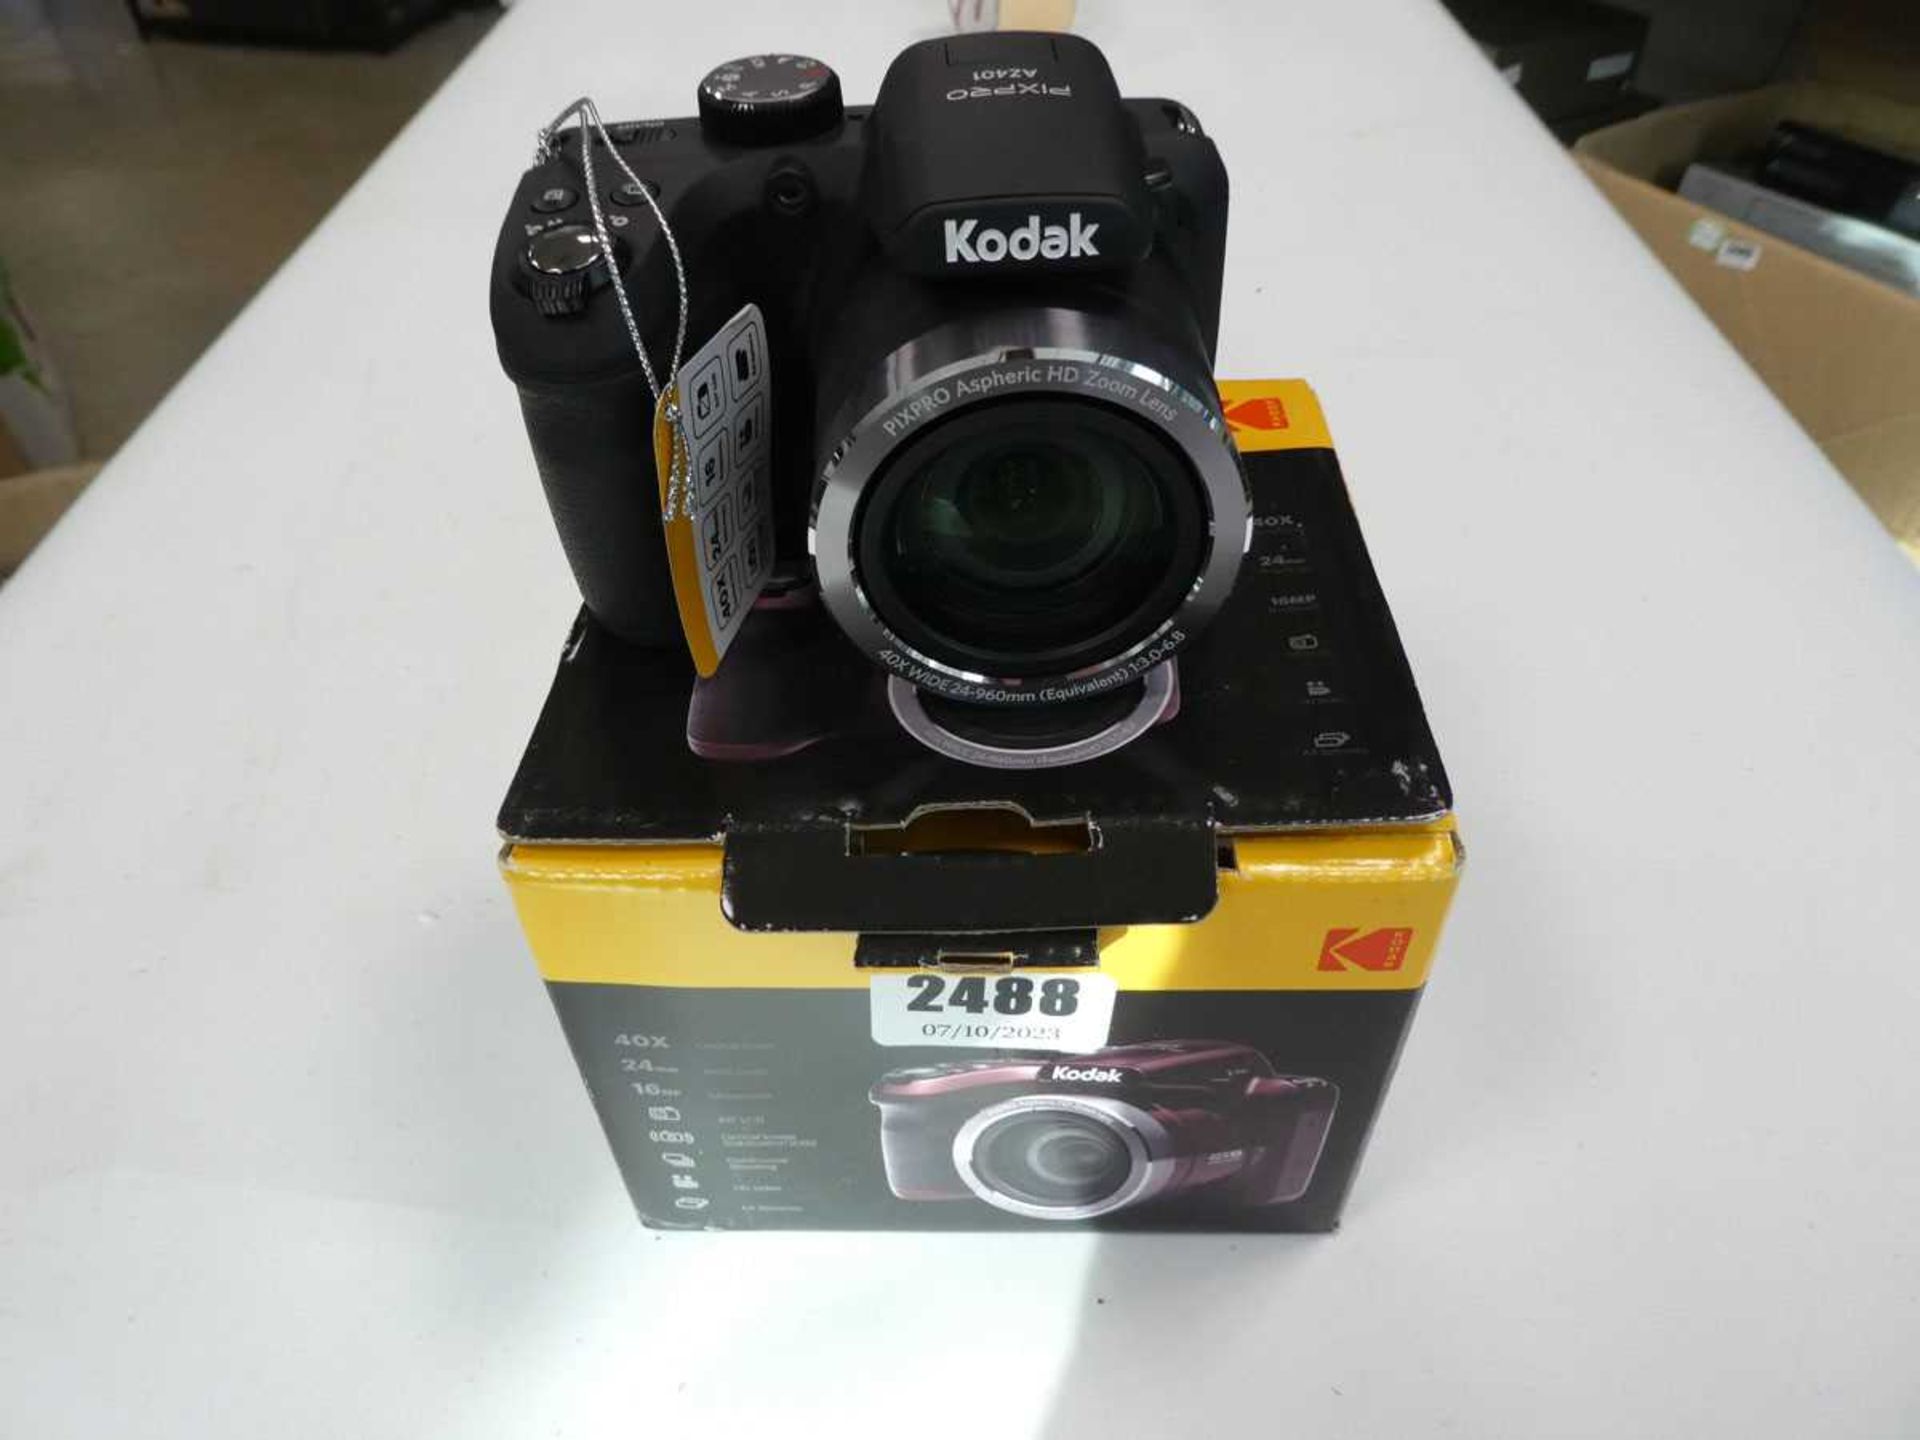 Boxed Kodak camera